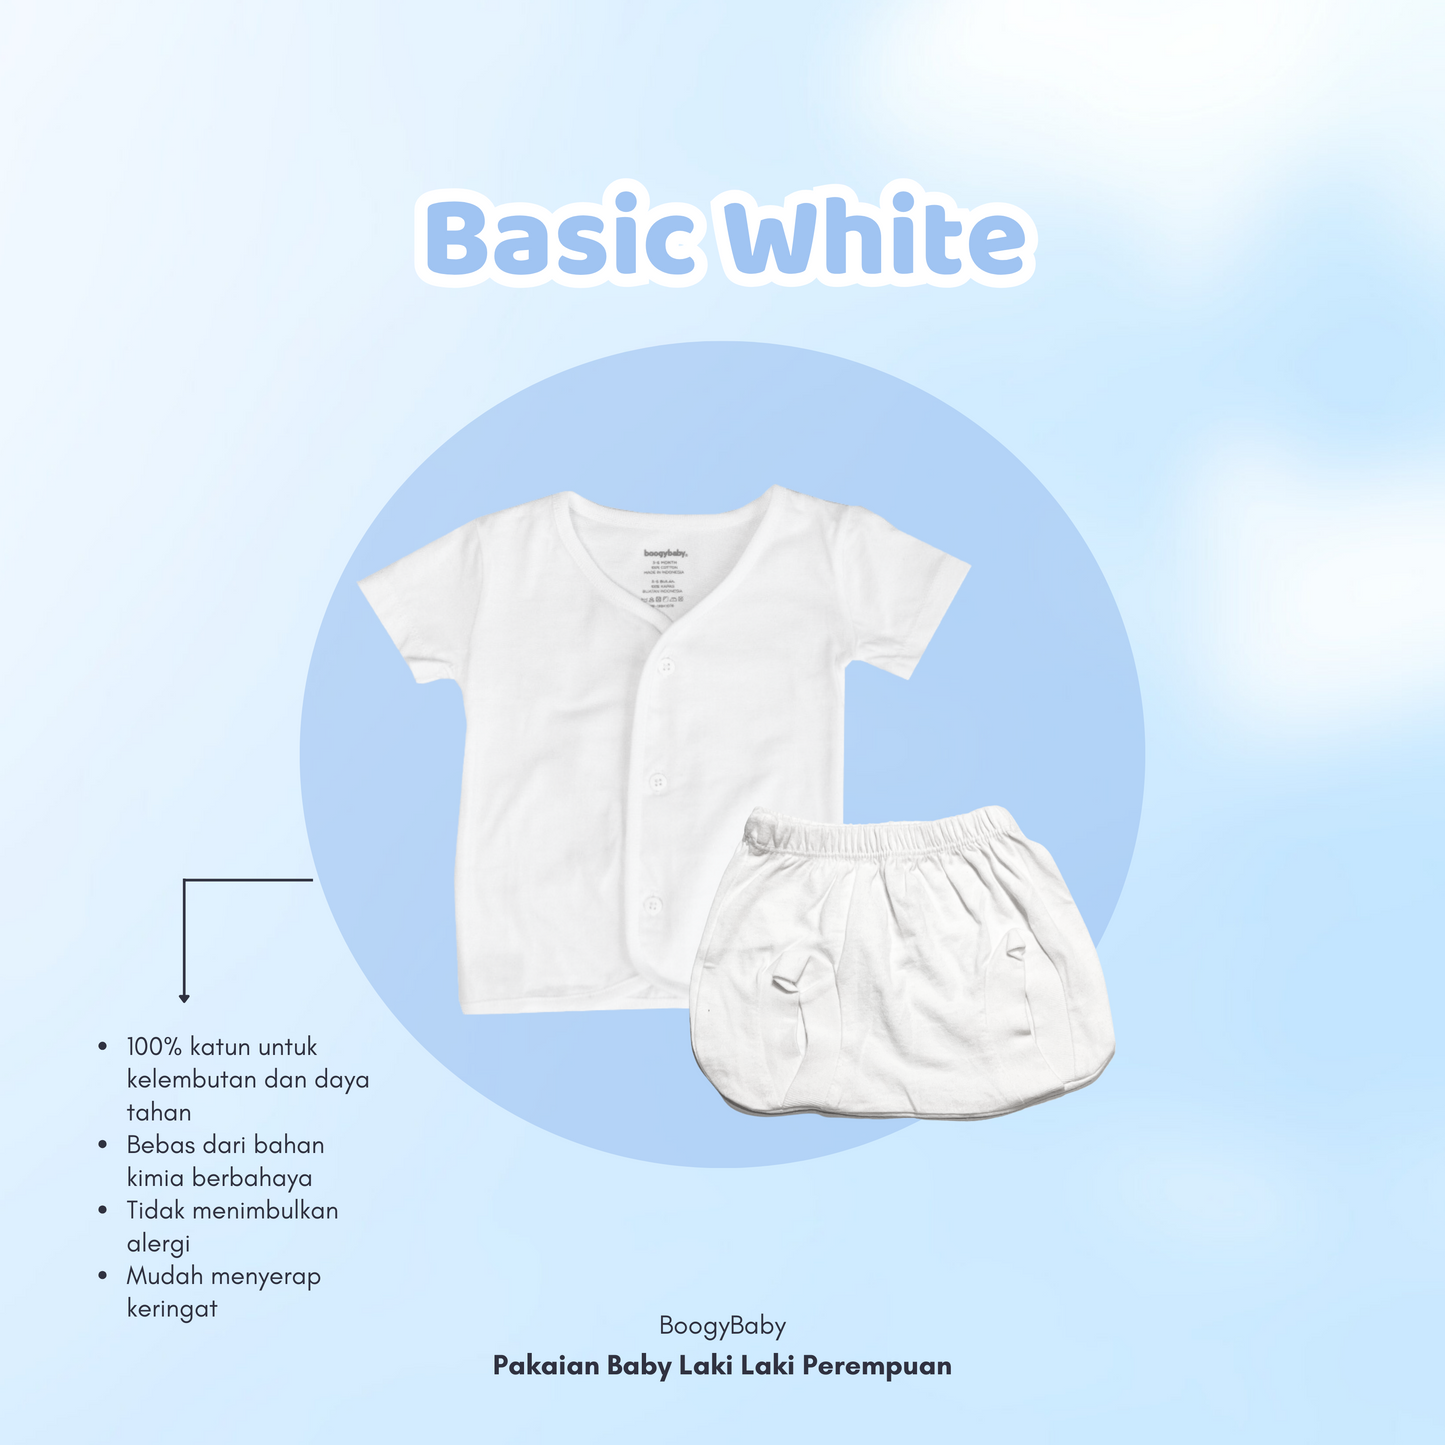 Baju Newborn Putih (Tangan Pendek Kancing Depan)